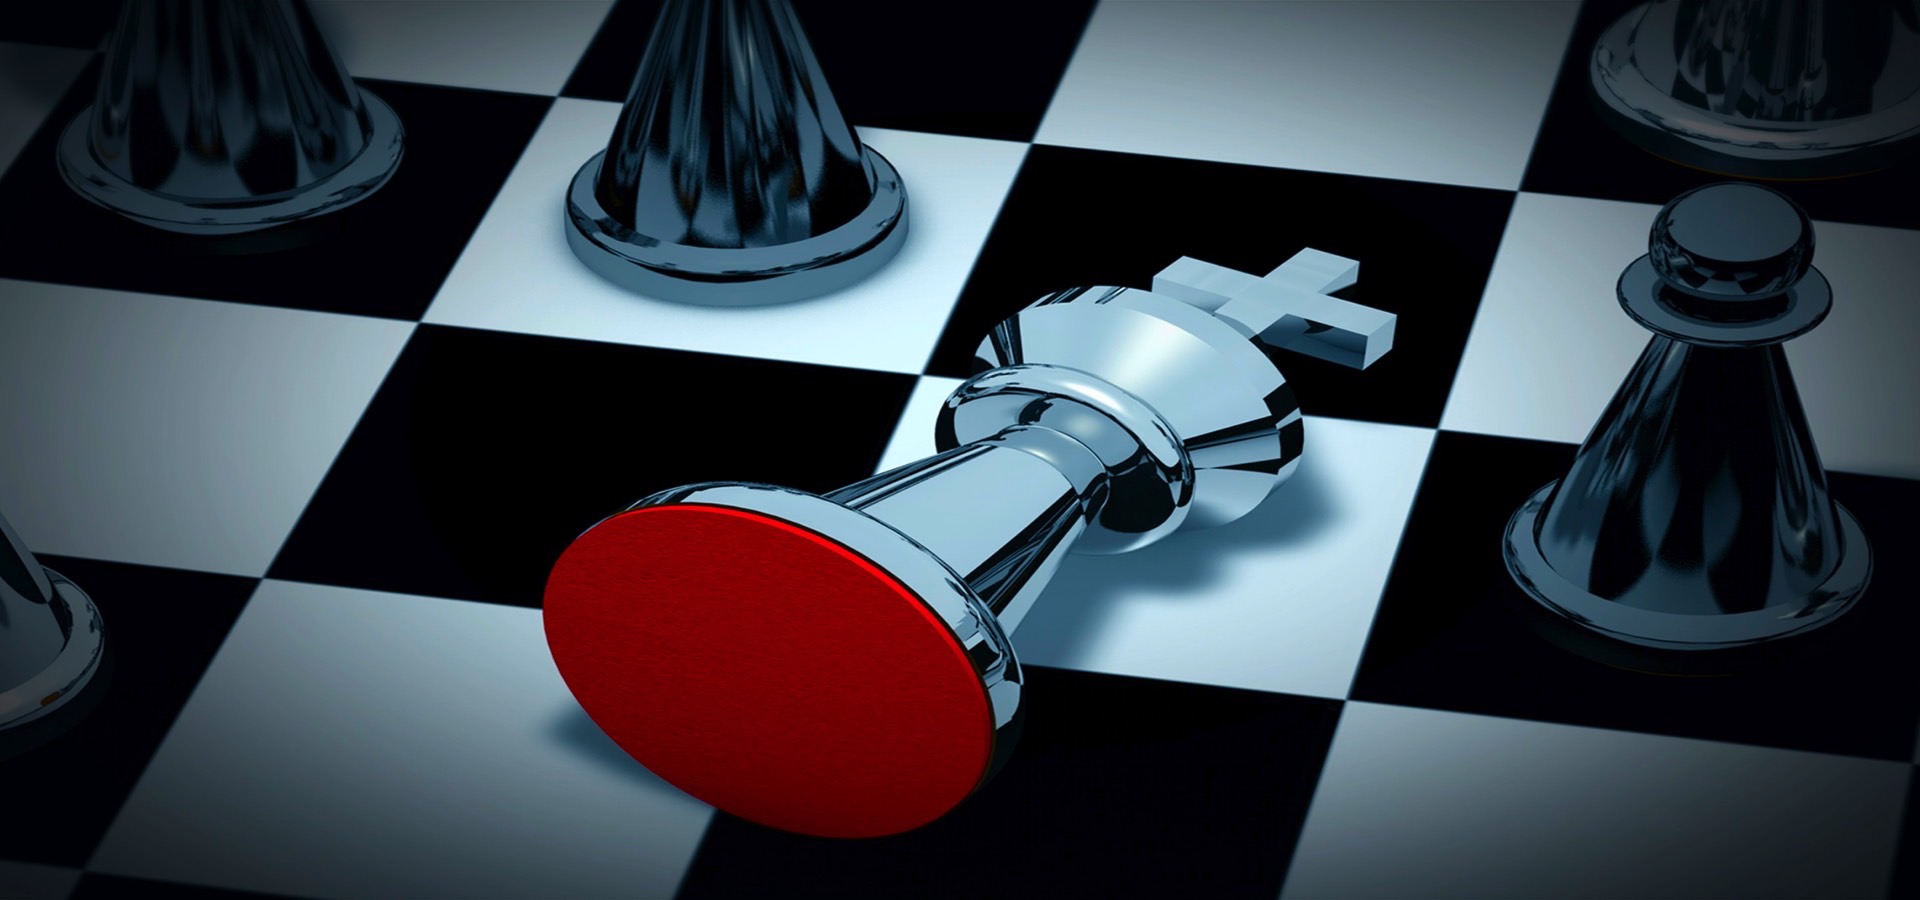 Šach-mat ako znak pre problém so splácaním hypotéky-diskrétny a rýchly predaj nehnuteľnosti